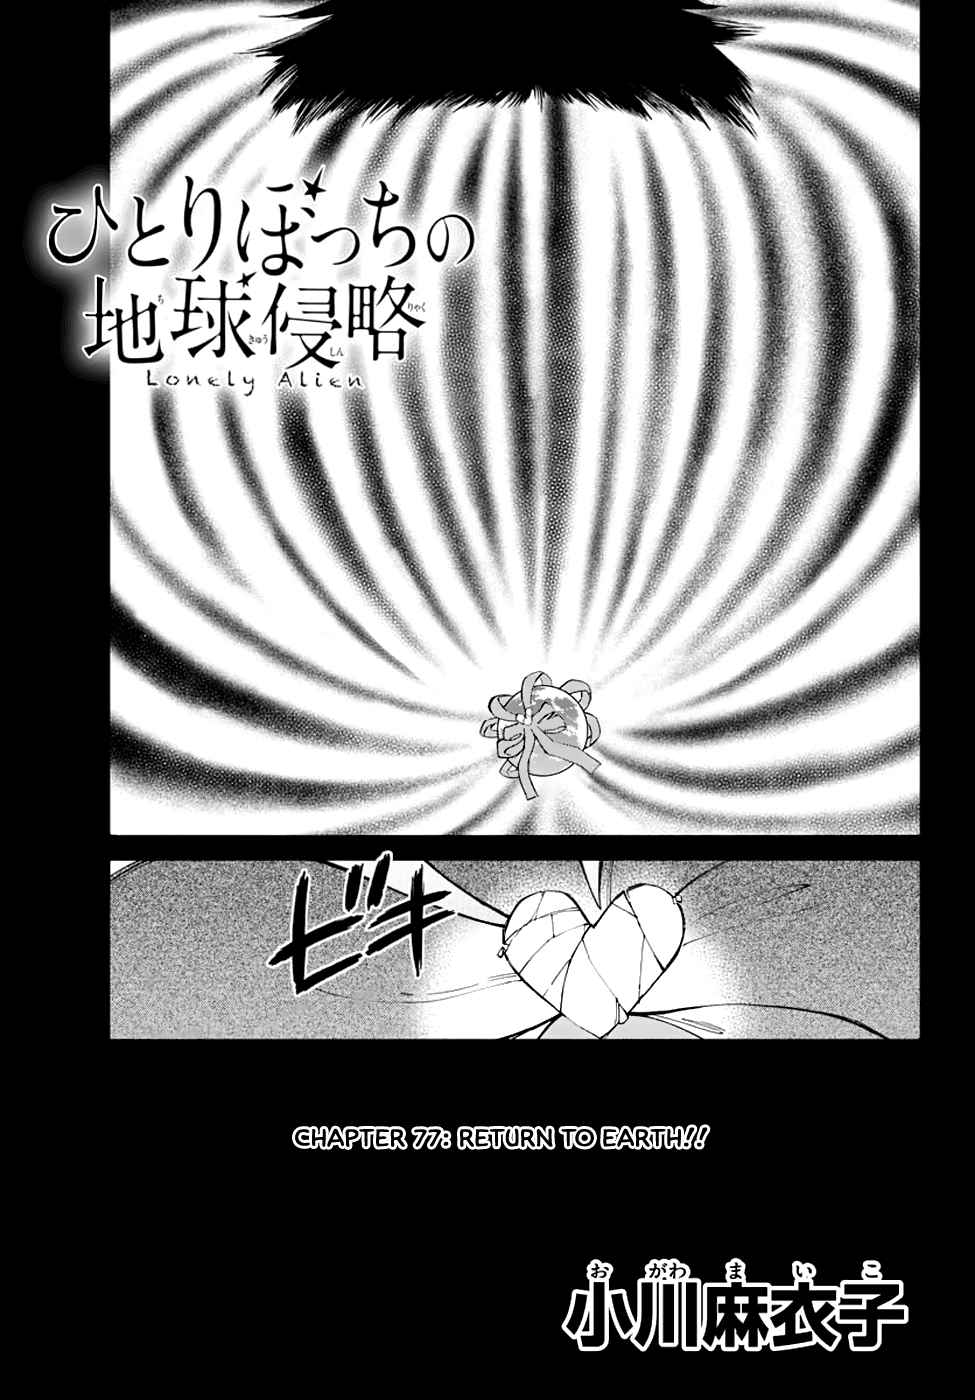 Hitoribocchi no Chikyuu Shinryaku Vol. 15 Ch. 77 Return to Earth!!